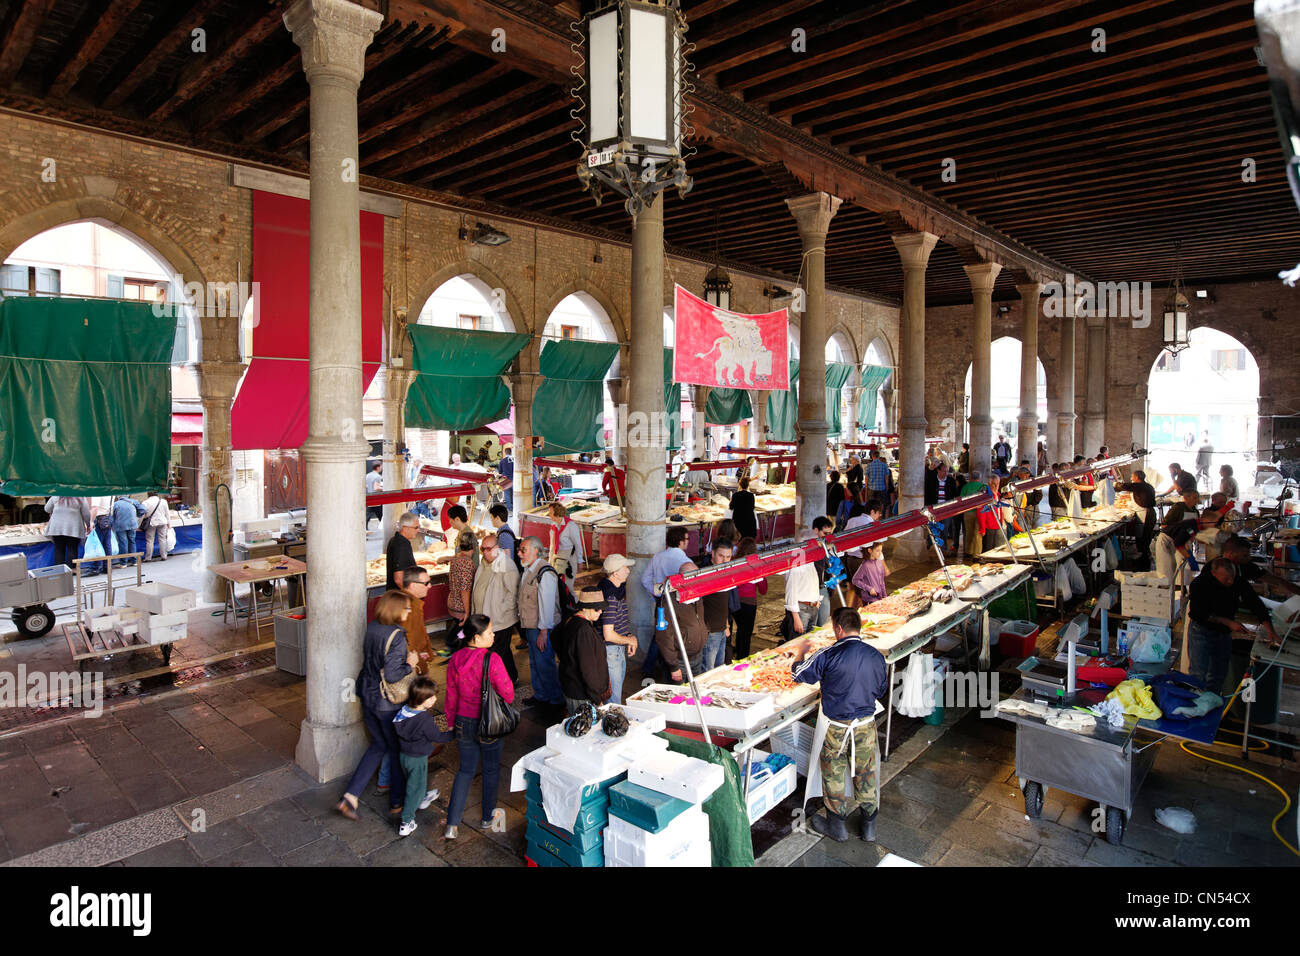 L'Italie, Vénétie, Venise, inscrite au Patrimoine Mondial de l'UNESCO, quartier de San Polo, Mercati di Rialto (marché du Rialto), le marché aux poissons Banque D'Images